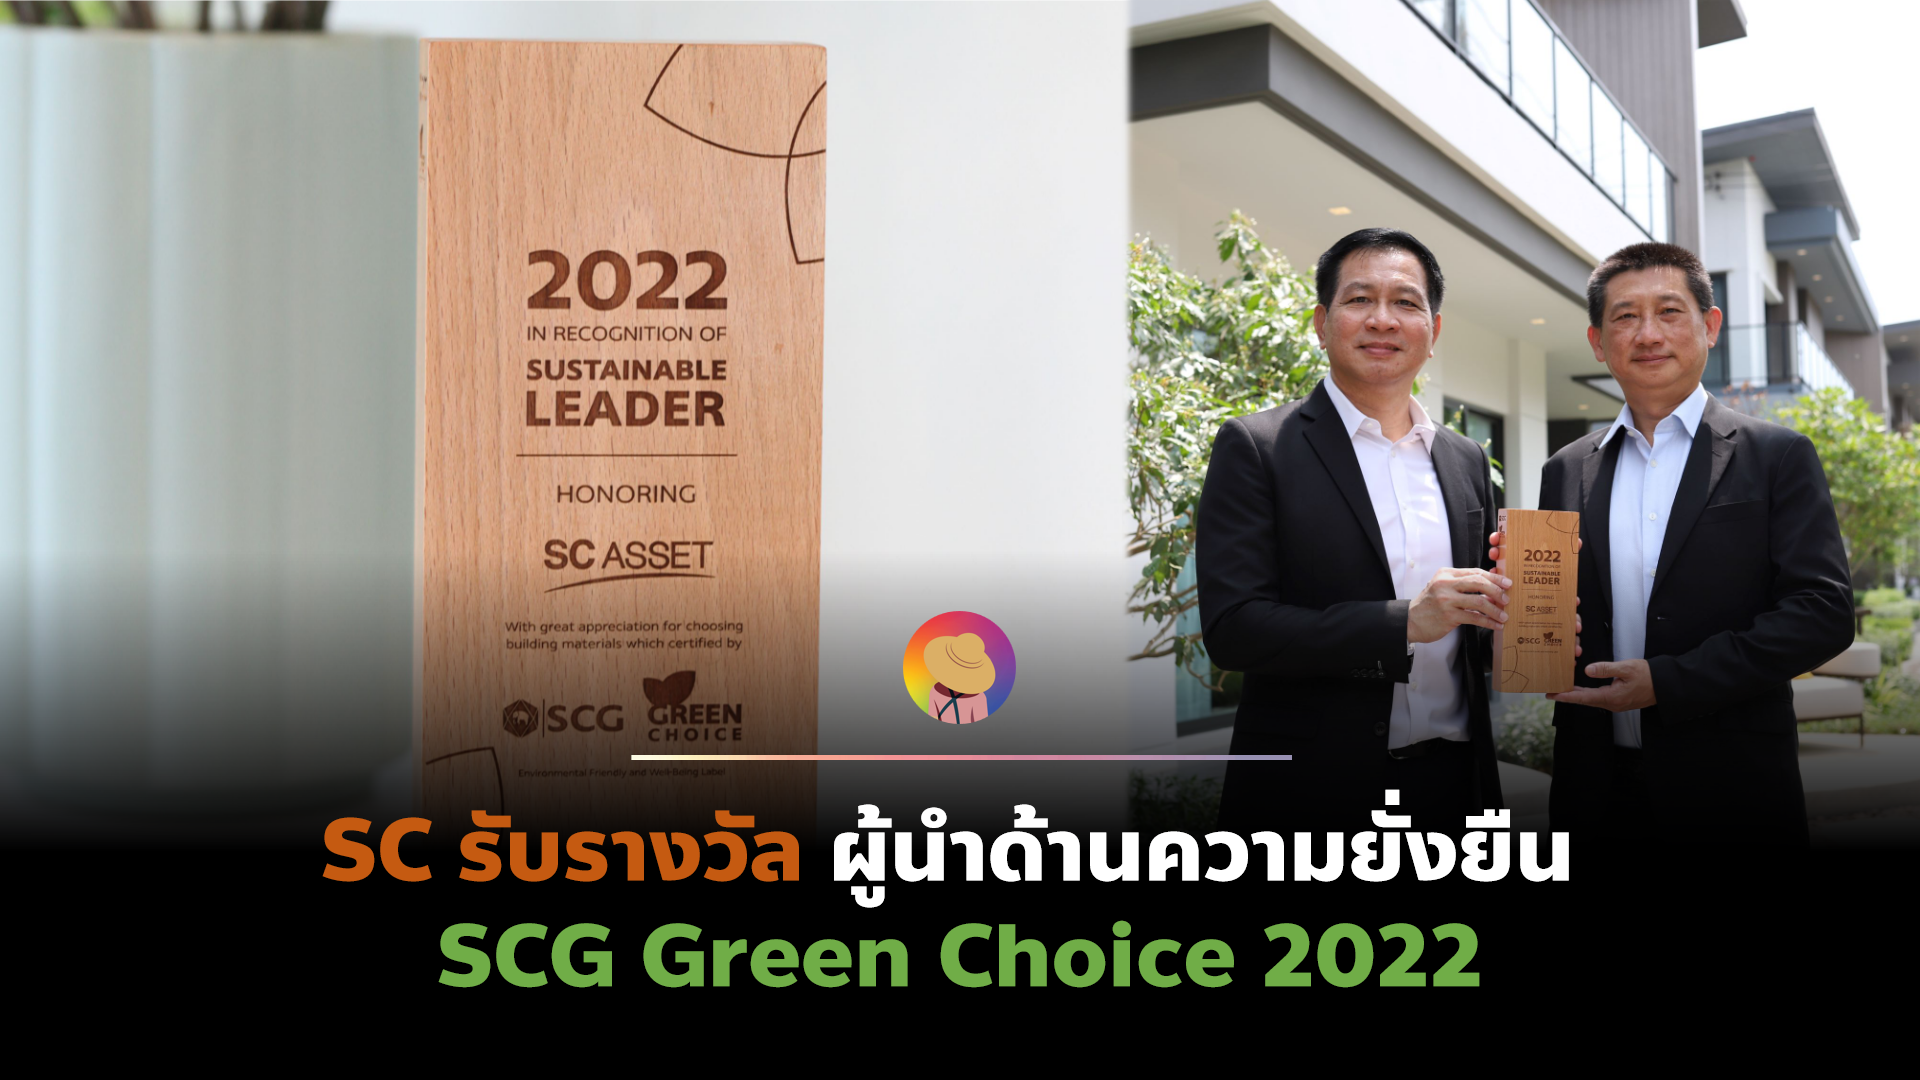 SC Asset รับรางวัล ผู้นำด้านความยั่งยืน SCG Green Choice 2022